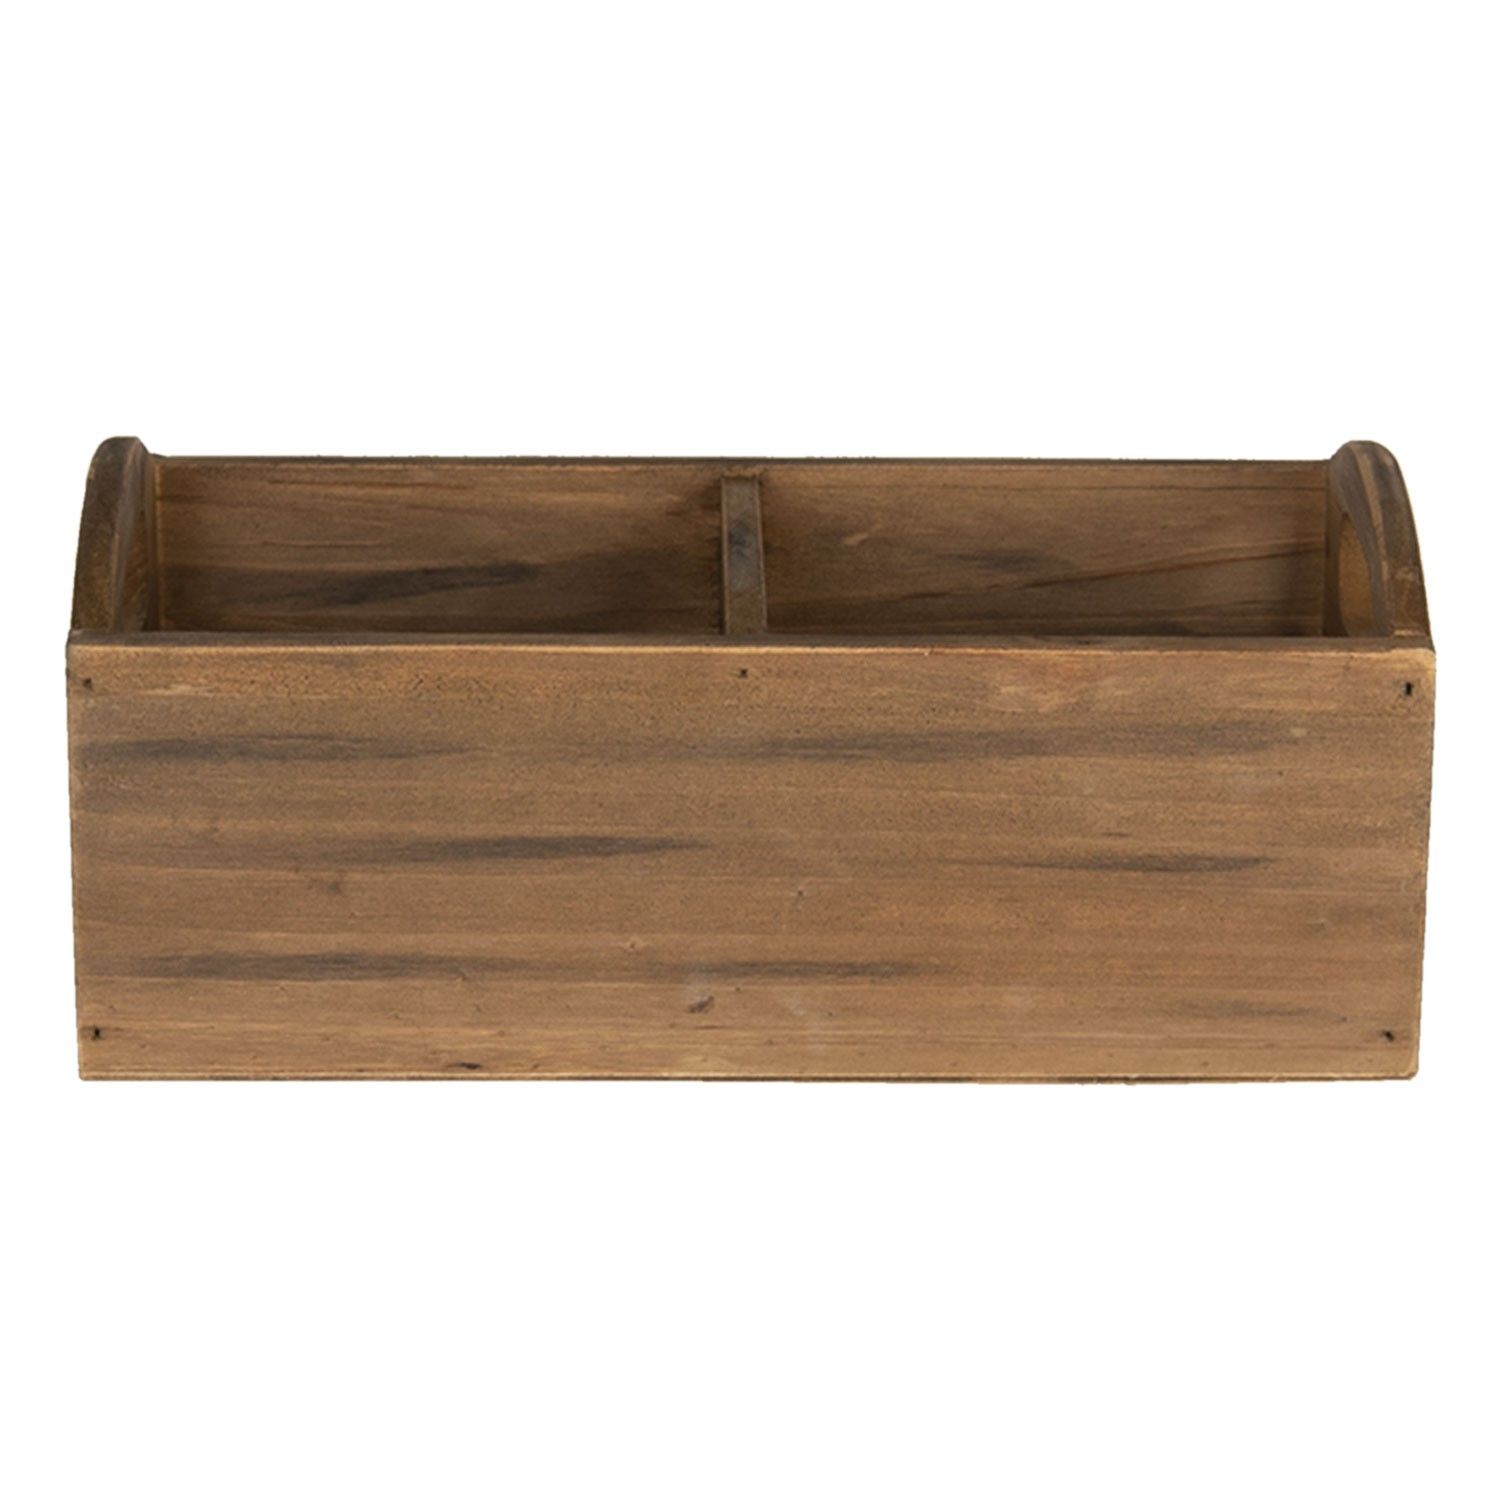 Hnedý drevený zásobník - 30 * 15 * 13 cm